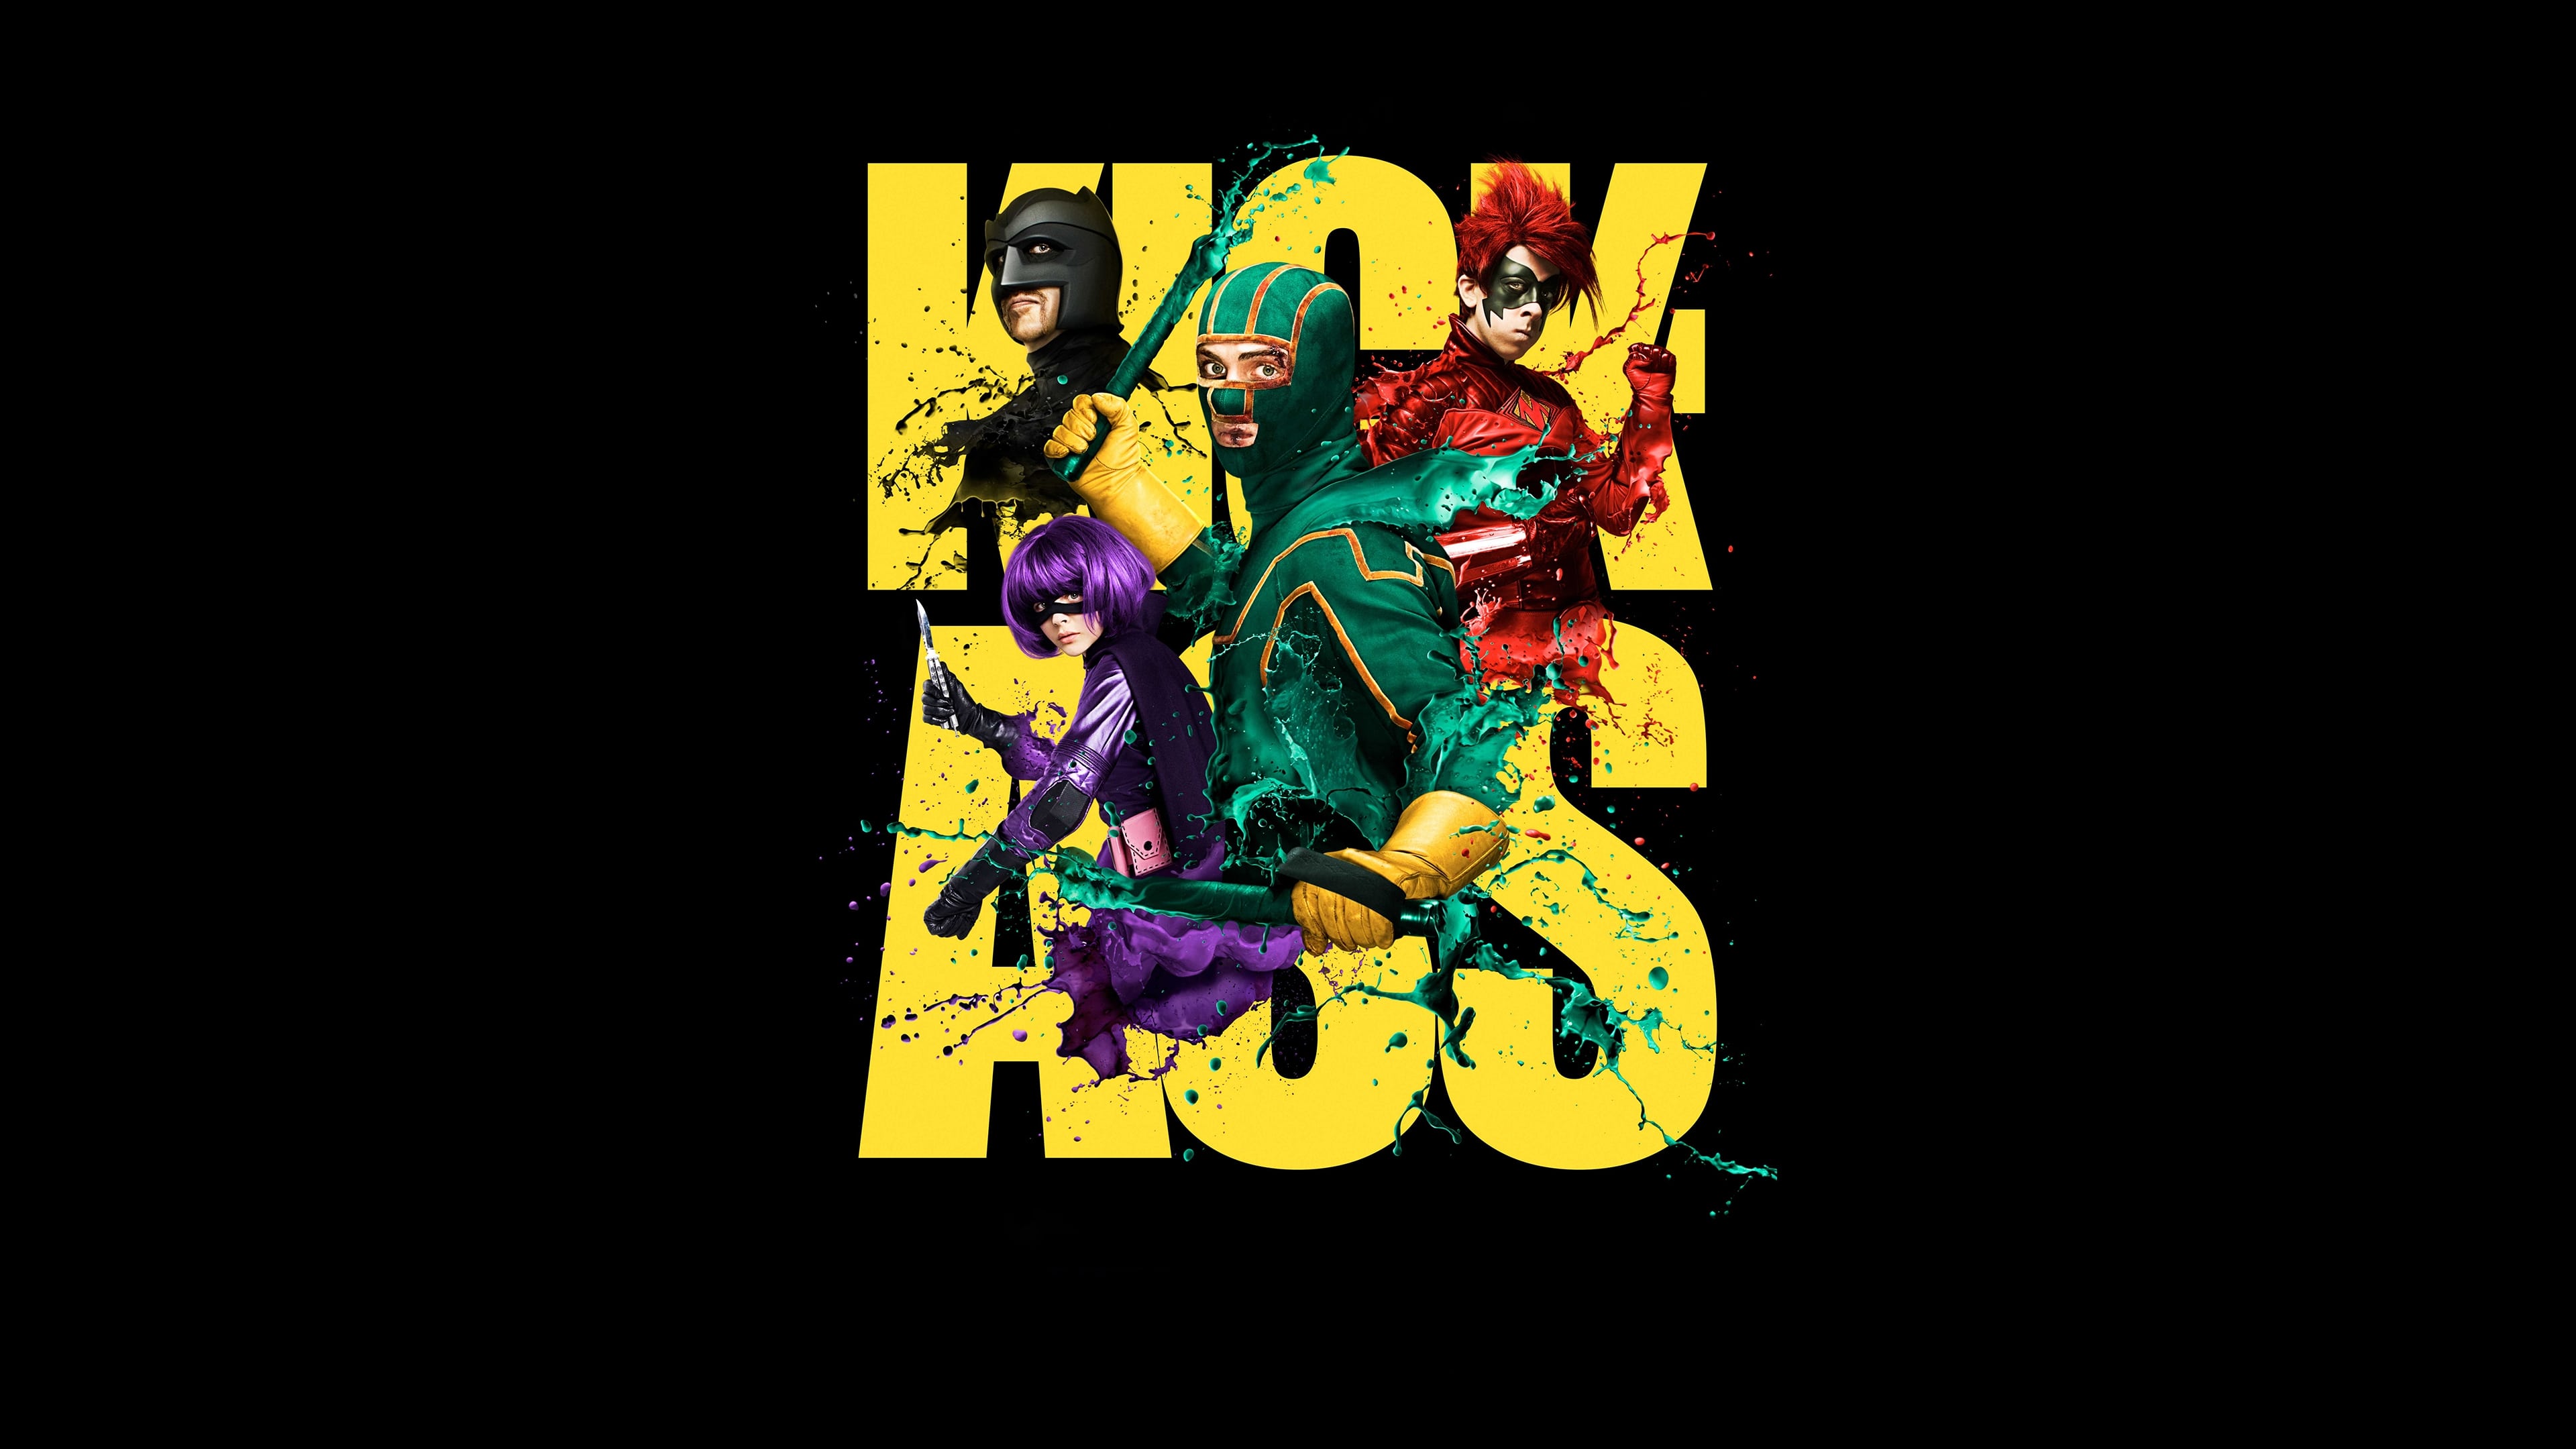 Kick-Ass: Un superhéroe sin superpoderes